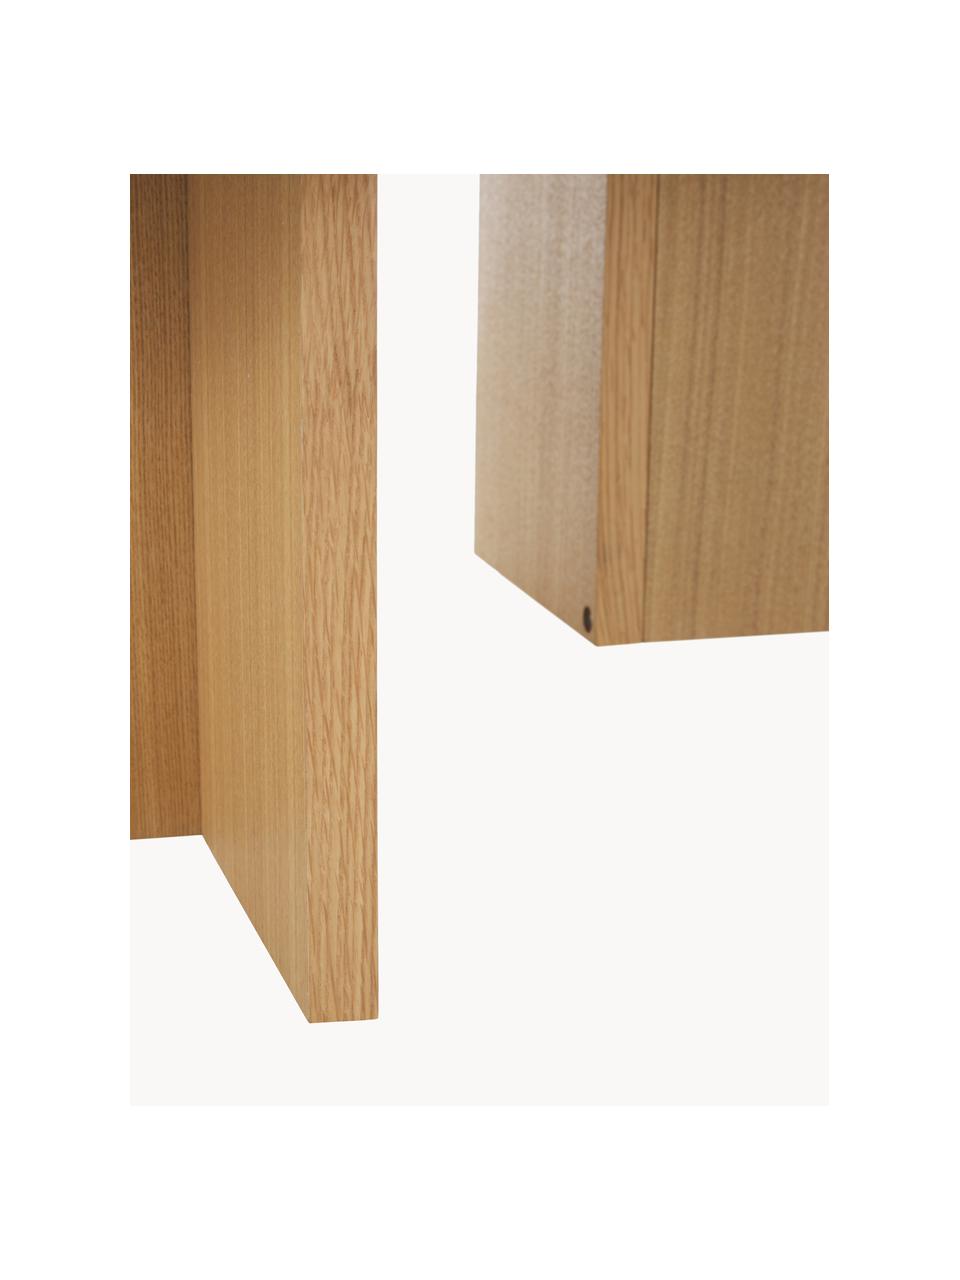 Ovaler Holz-Couchtisch Toni, Mitteldichte Holzfaserplatte (MDF) mit Eschenholzfurnier, lackiert, Eschenholz, B 100 x T 55 cm